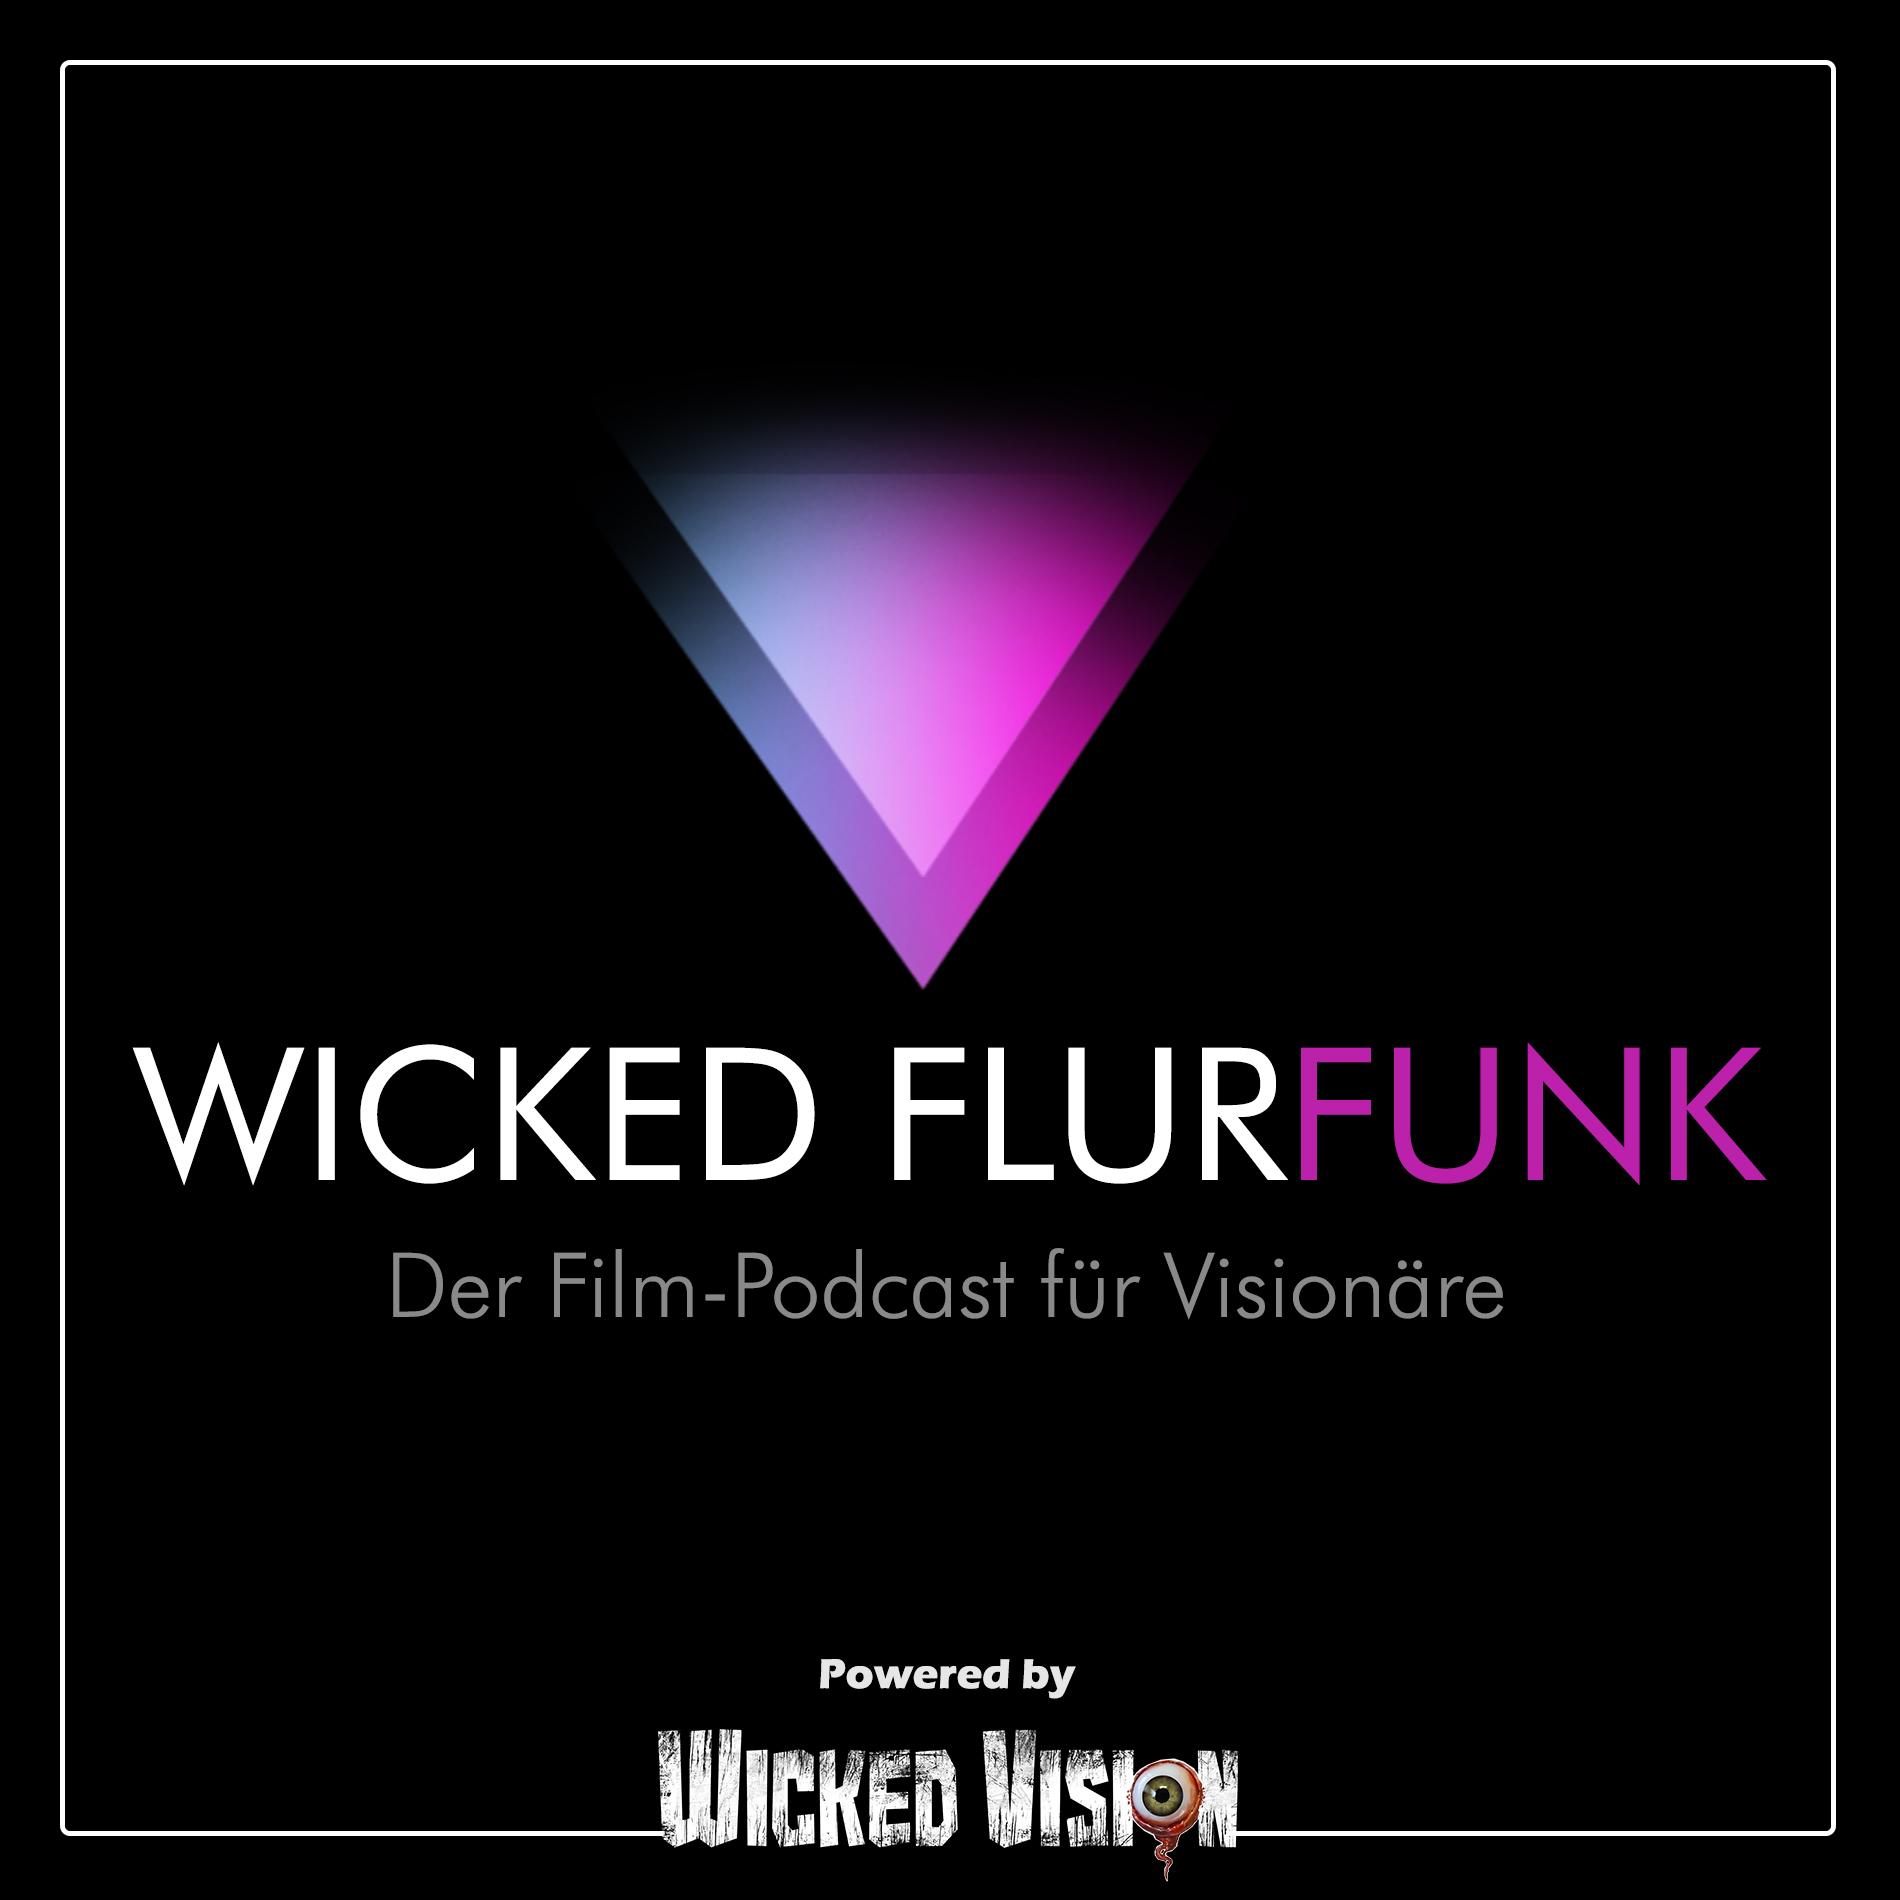 Wicked Flurfunk